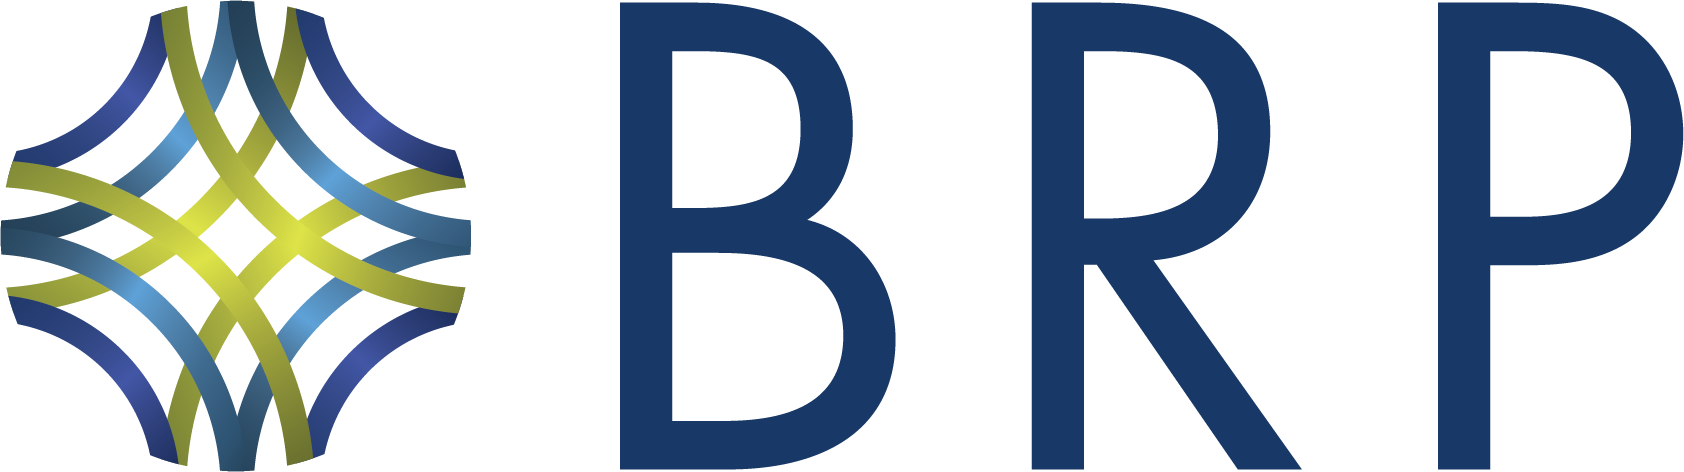 BRP full color logo2